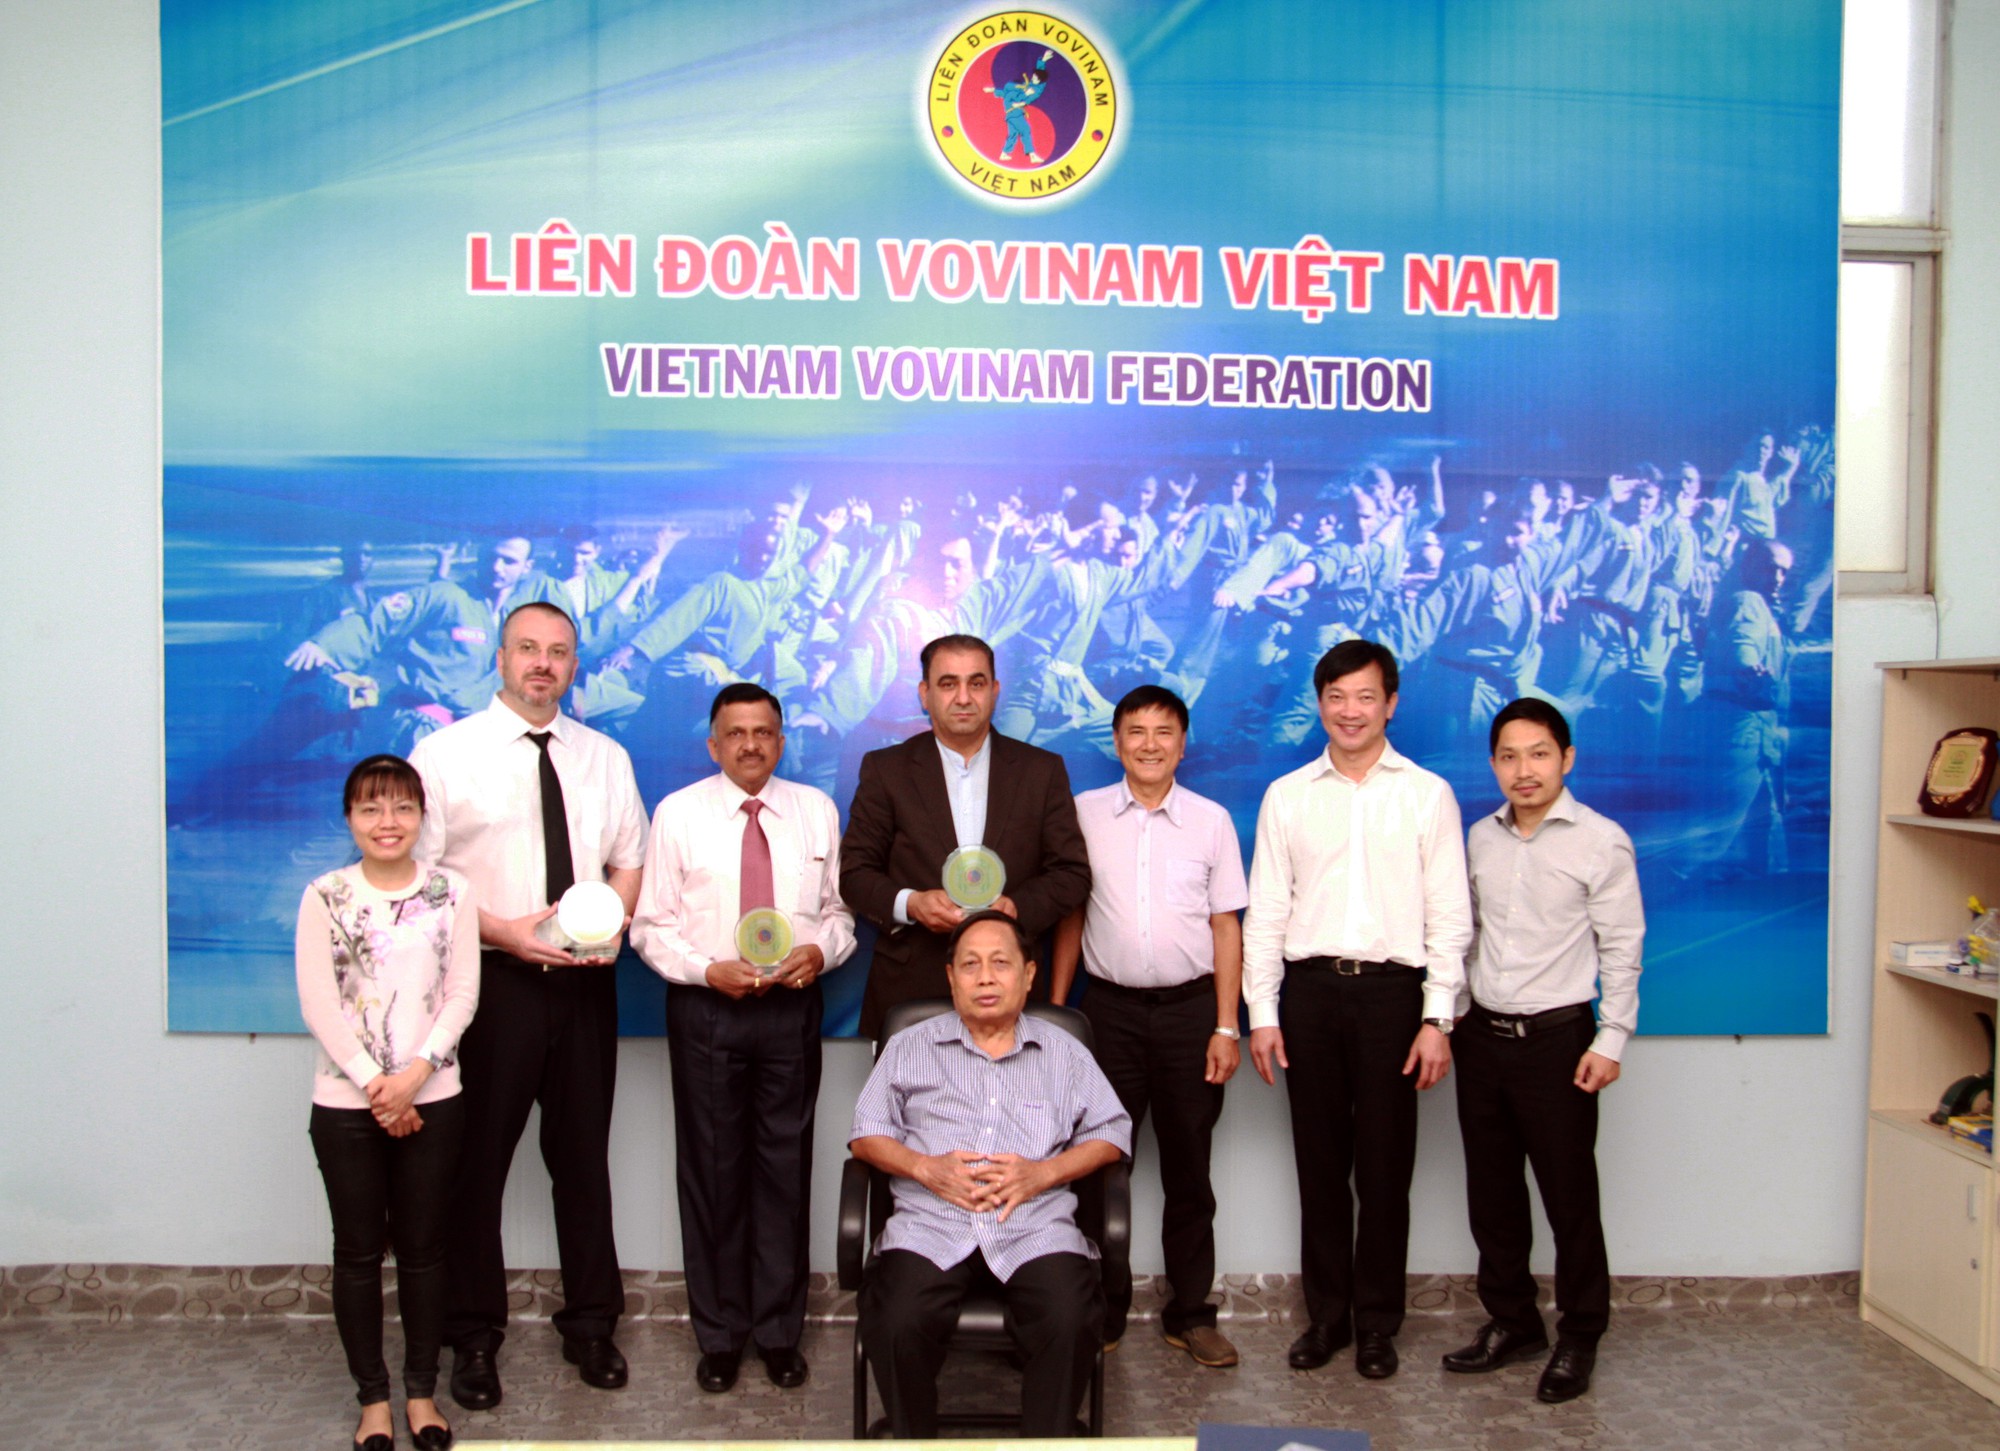 Các lãnh đạo liên đoàn Vovinam các châu lục họp tại TPHCM. Ảnh: Lê Giang.